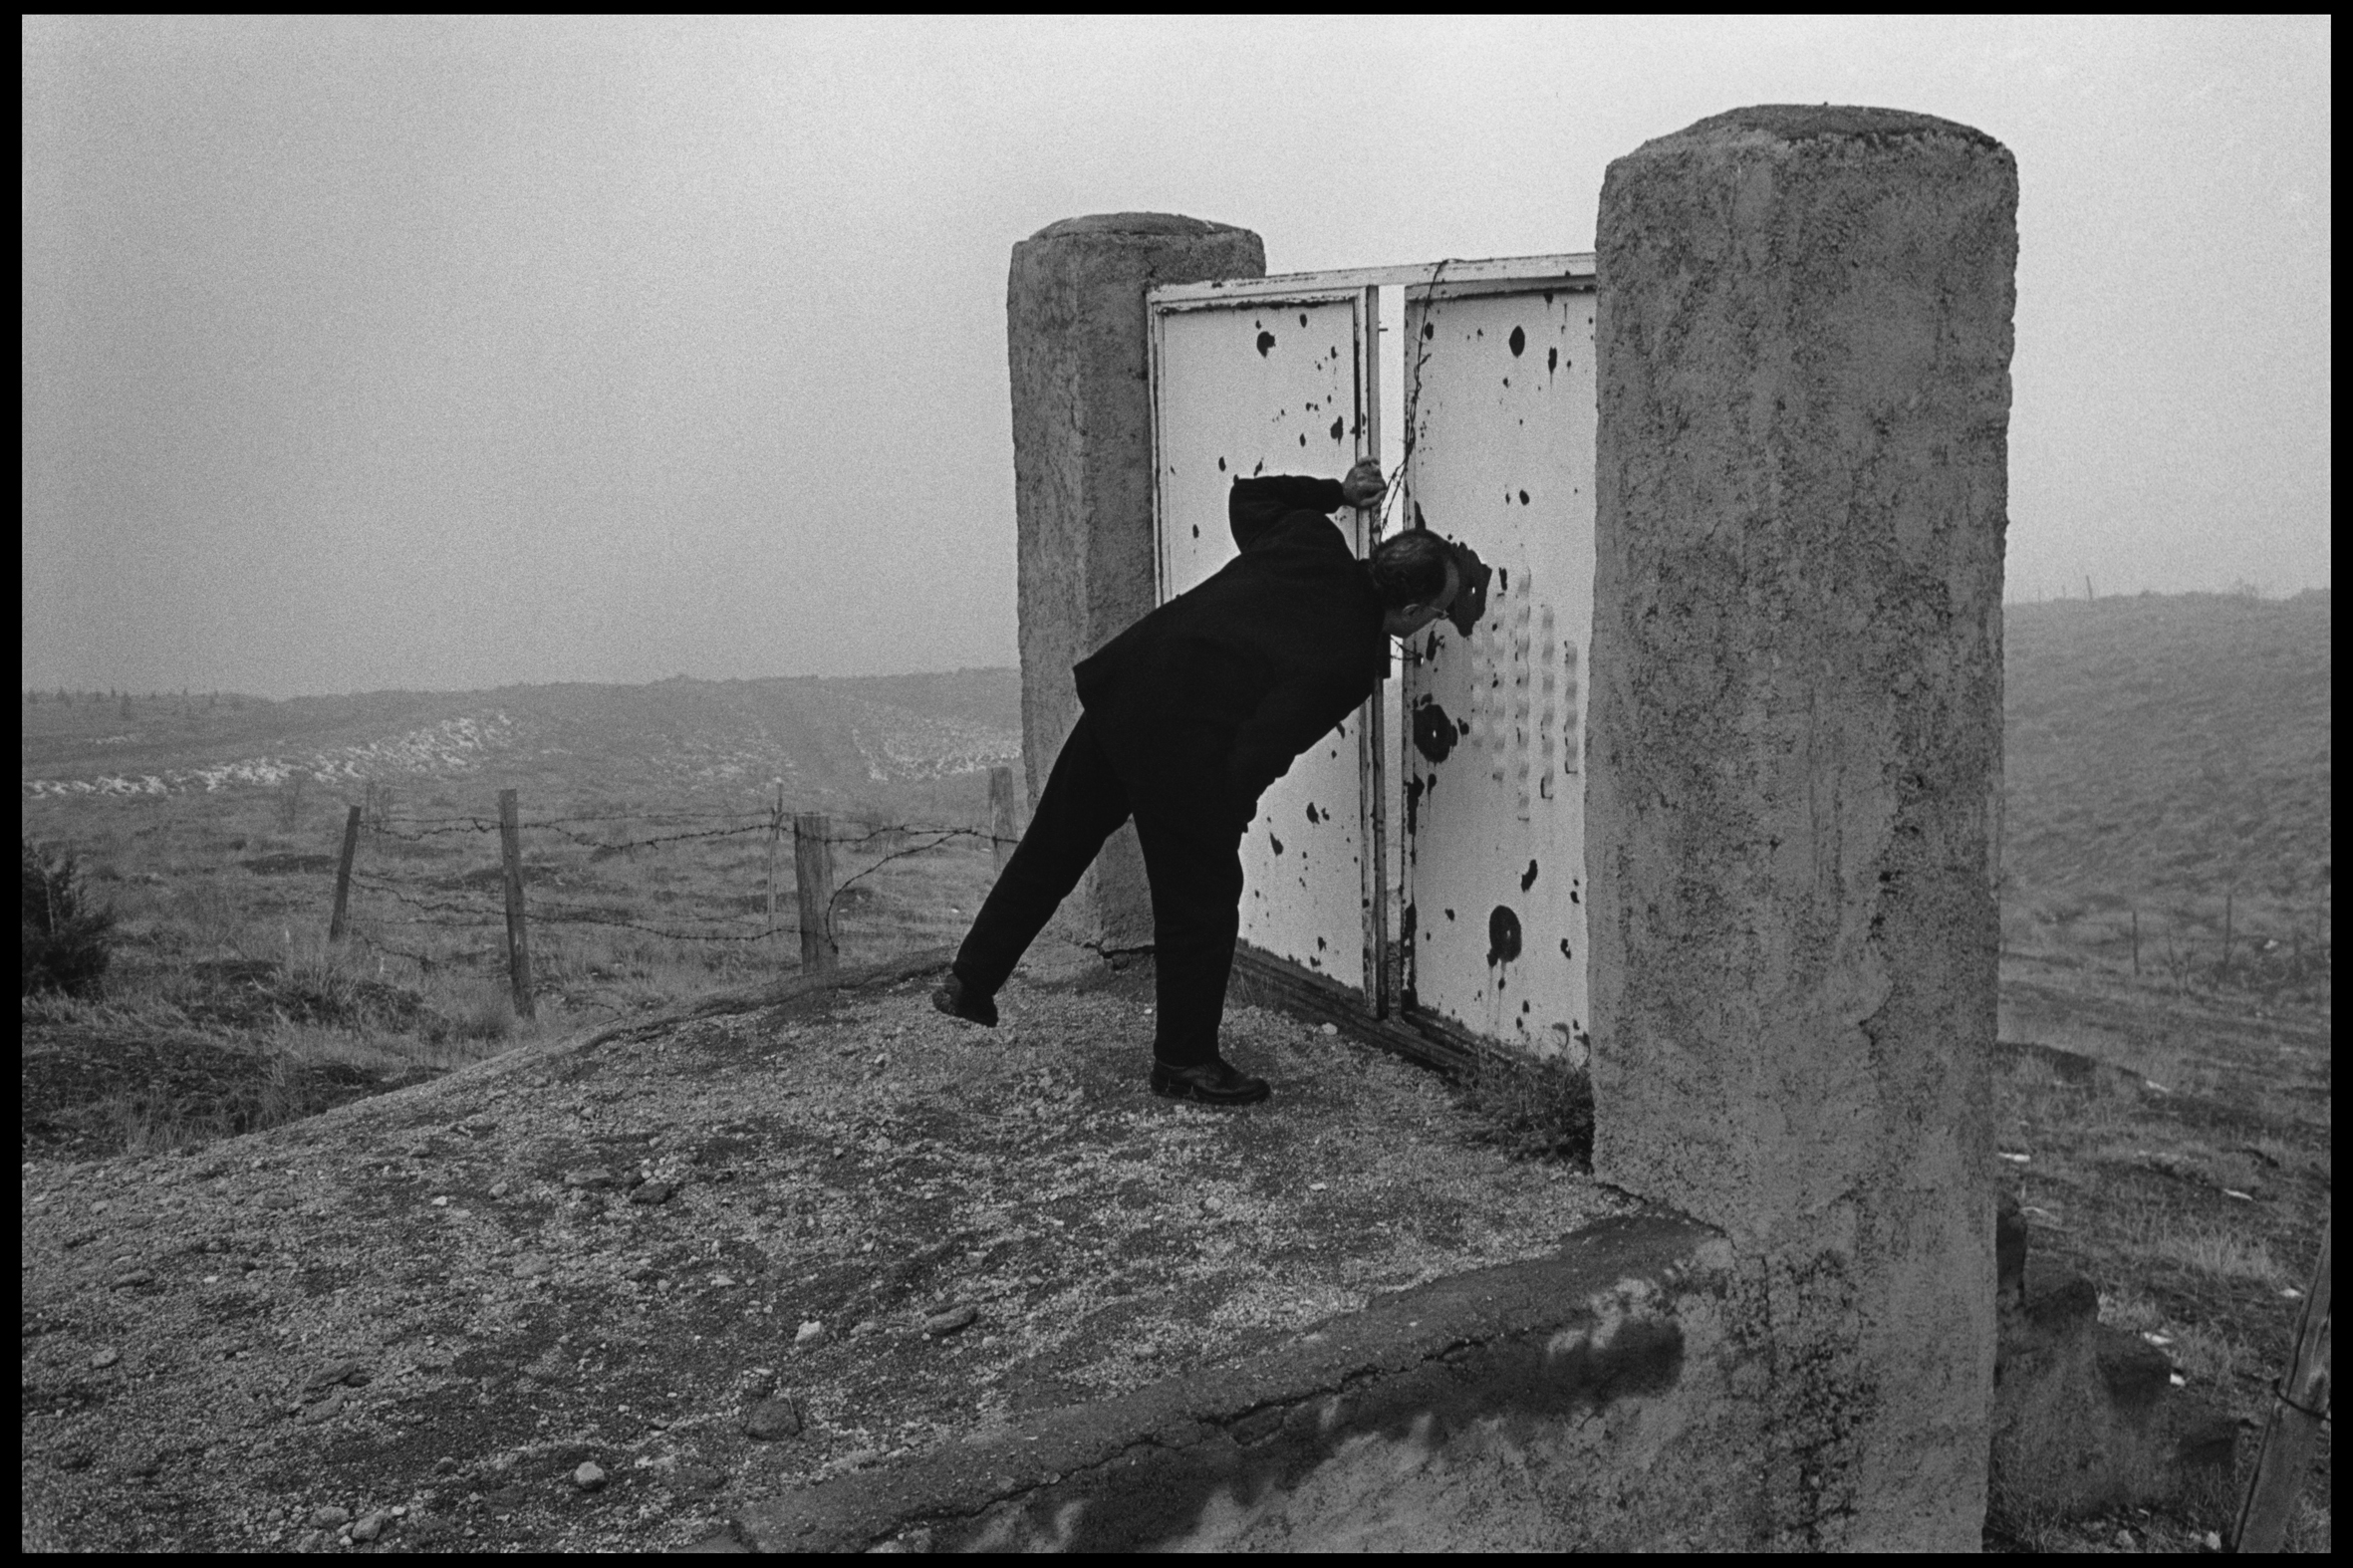 Iran. Téhéran. 1997. Le réalisateur Abbas KHIAROSTAMI sur les collines entourant la capitale, où a été tourné son film "Taste of Cherry", qui a reçu la Palme d'or à Cannes en 1997. Abbas / Magnum Photos